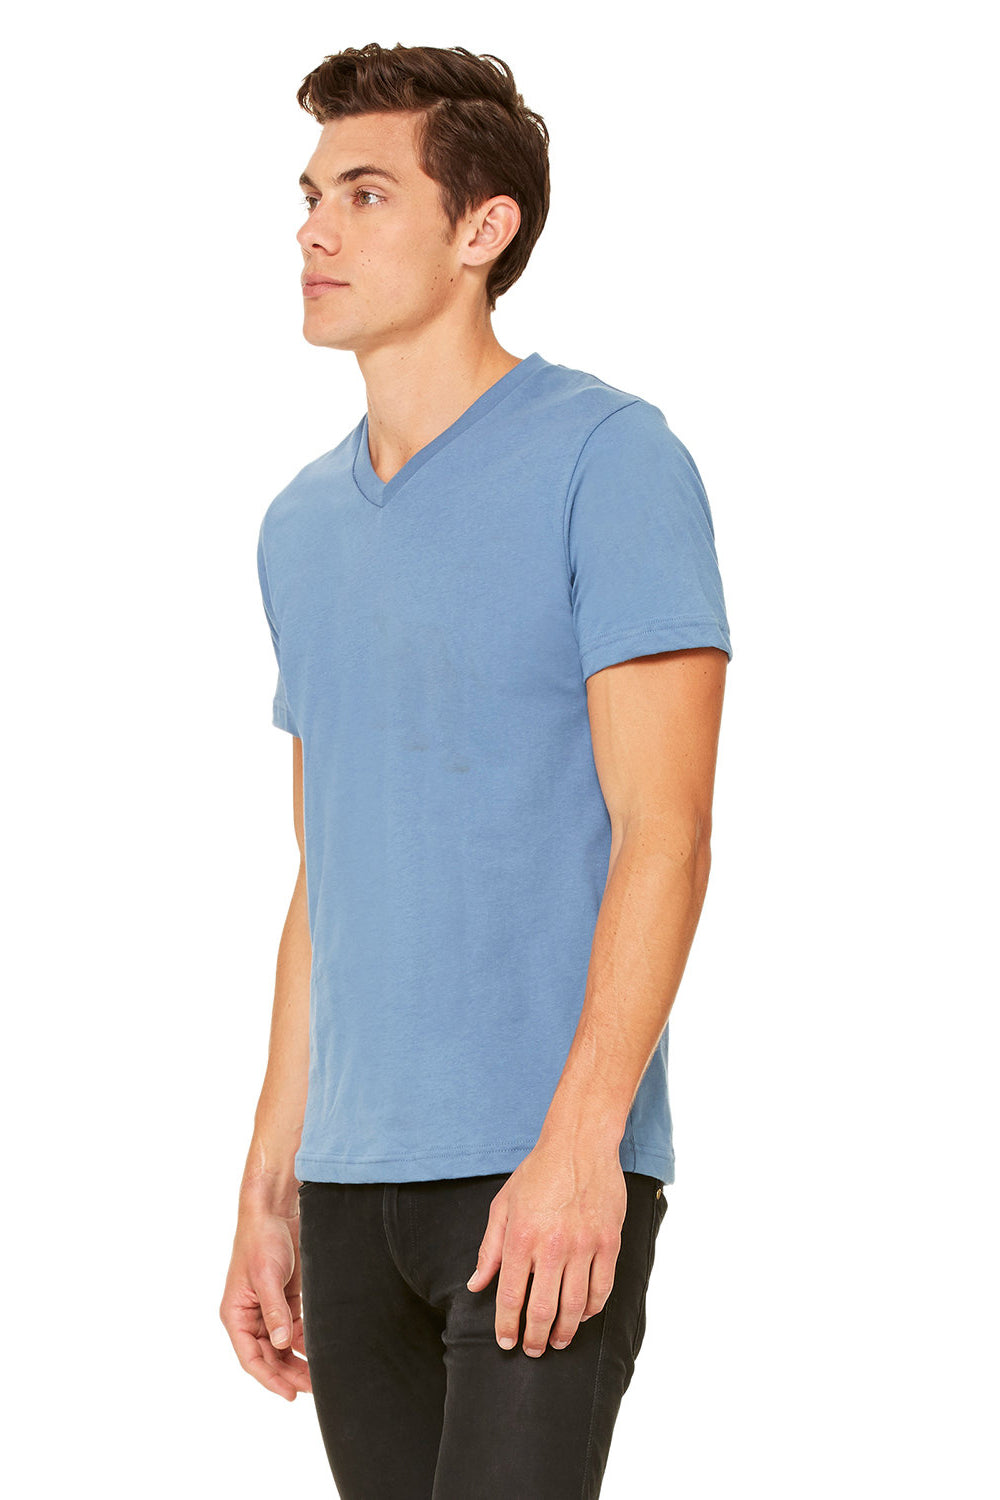 Bella + Canvas BC3005/3005/3655C Mens Jersey Short Sleeve V-Neck T-Shirt Steel Blue Model Side